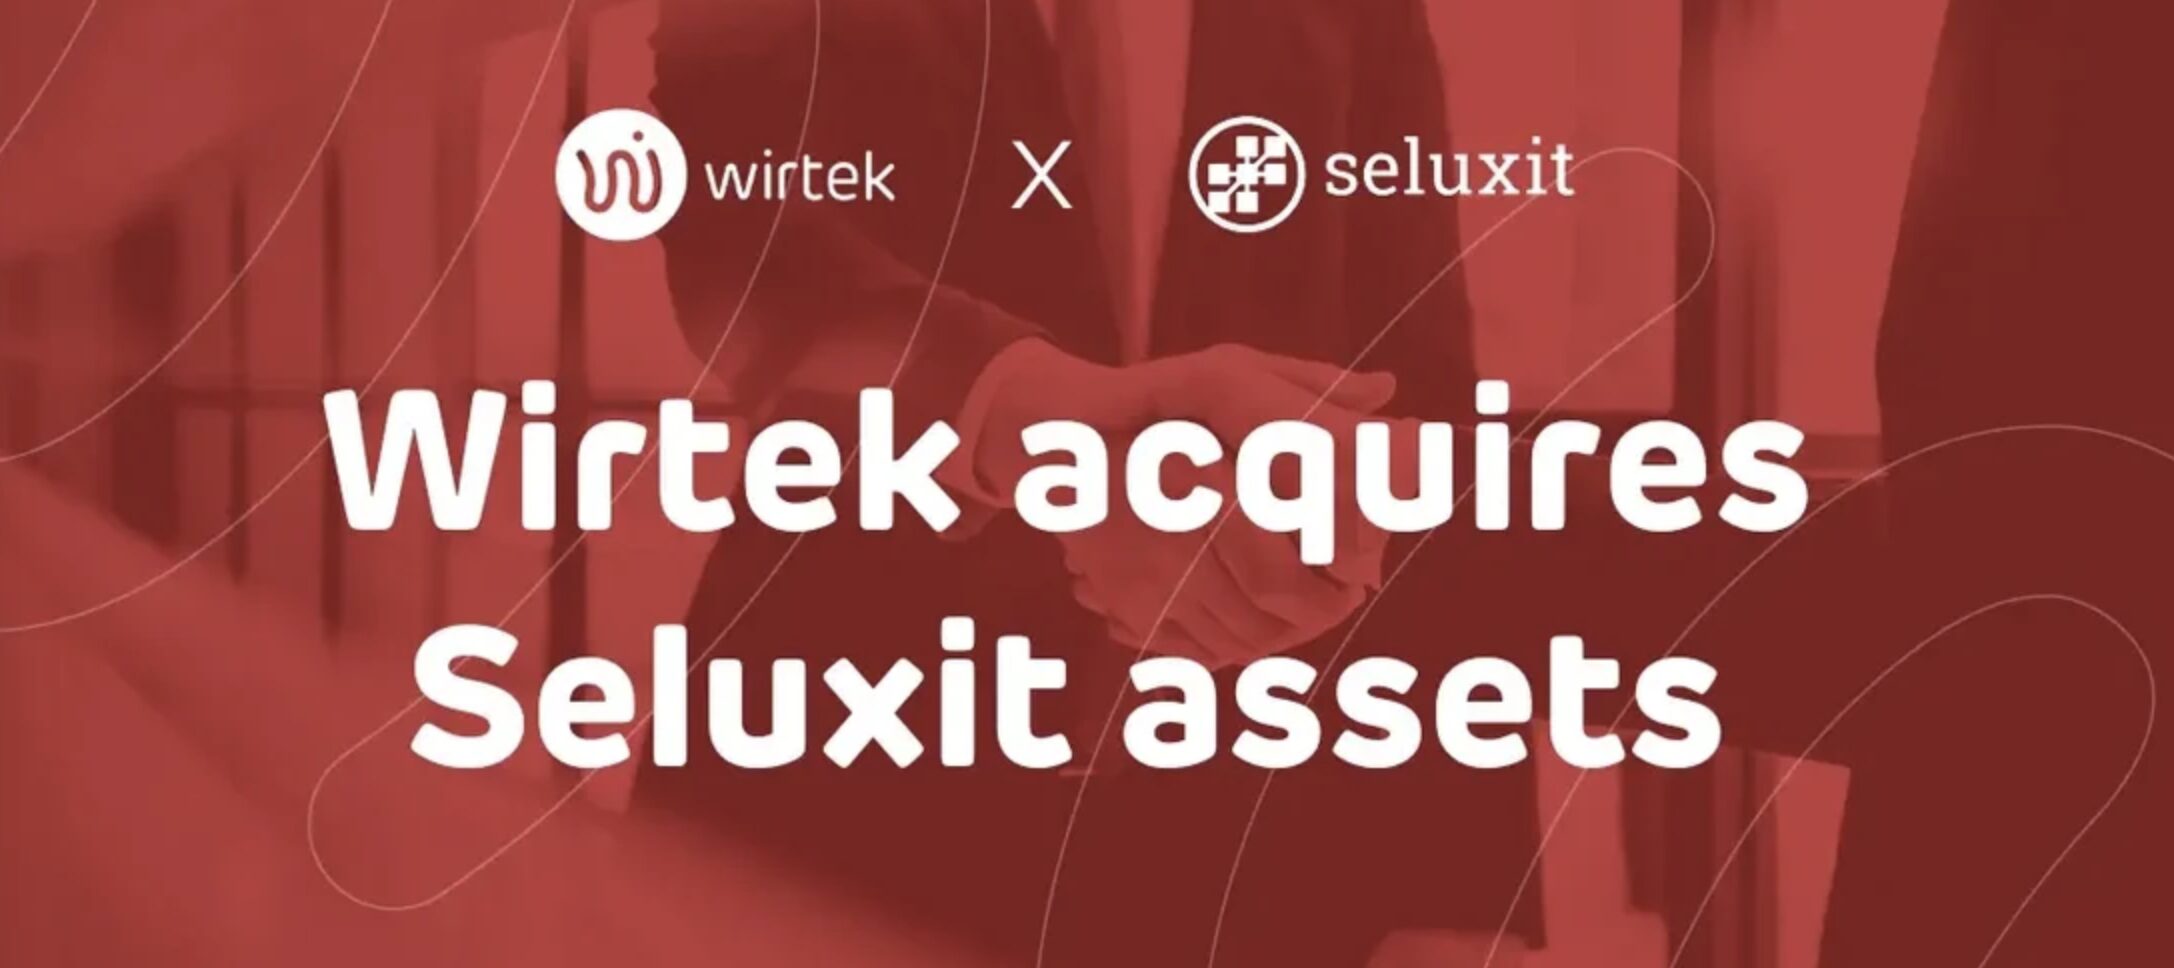 Wirtek acquires Seluxit